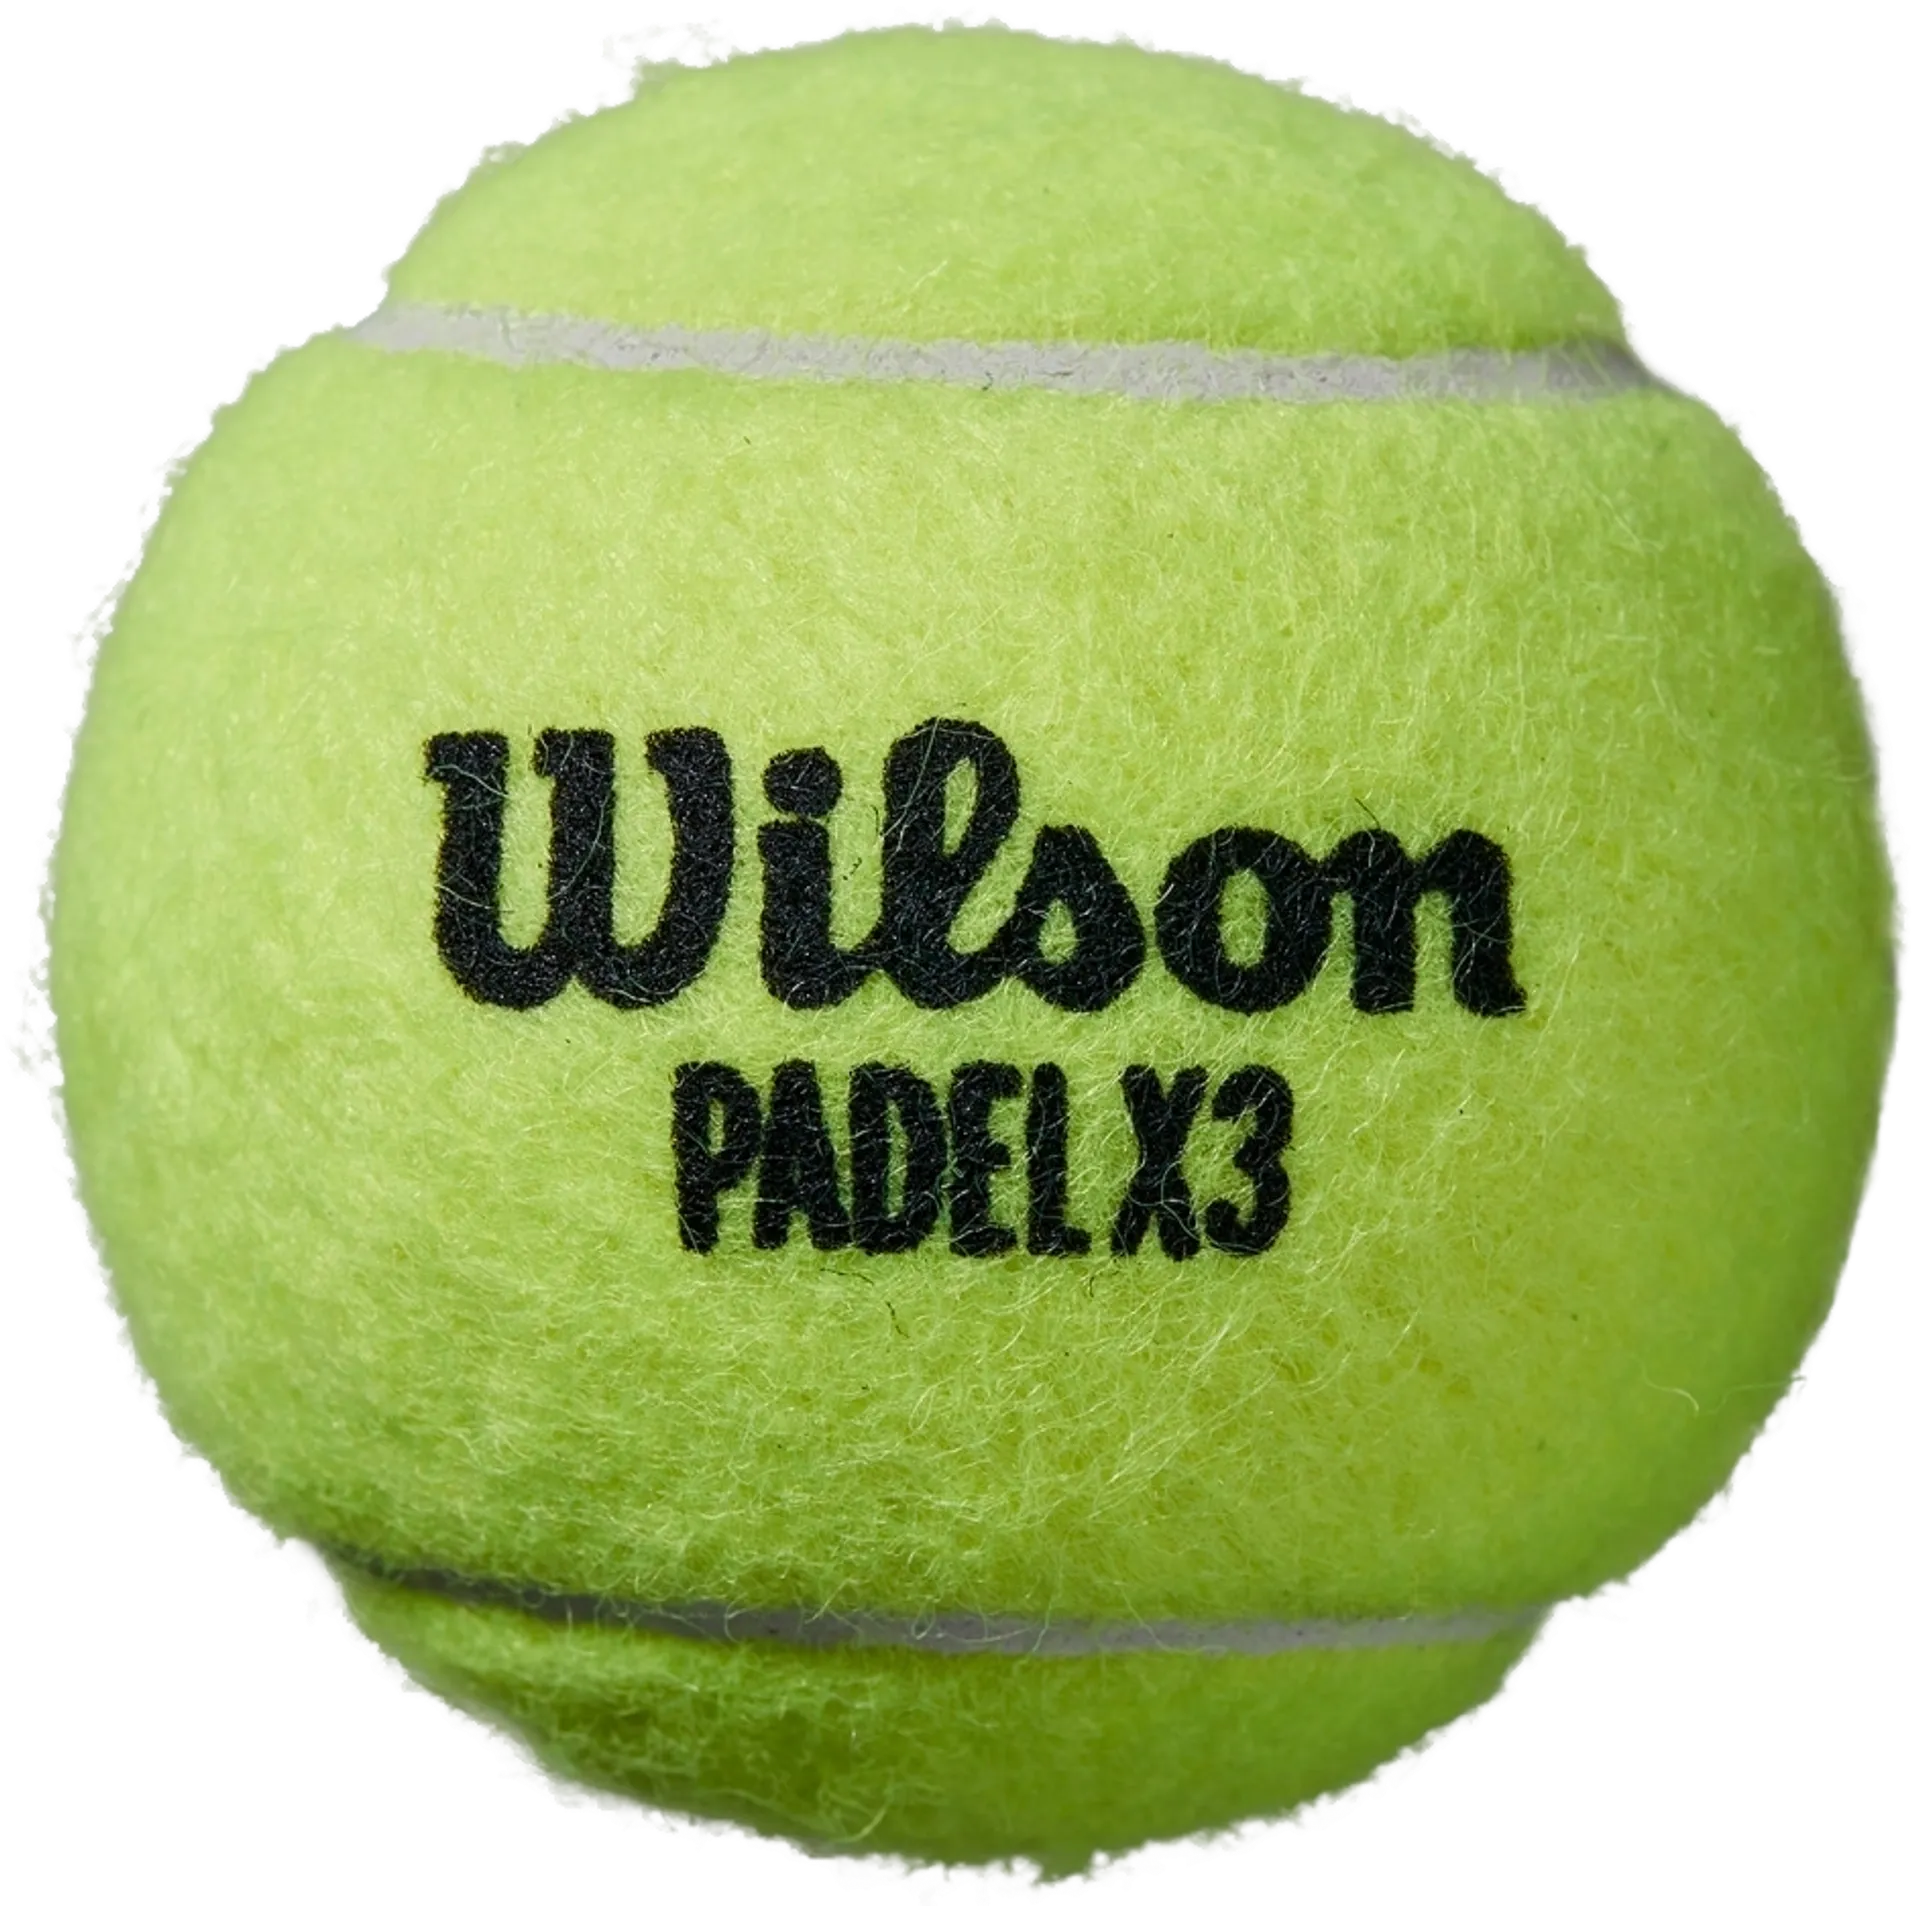 Wilson padelpallo X3 Speed - 2